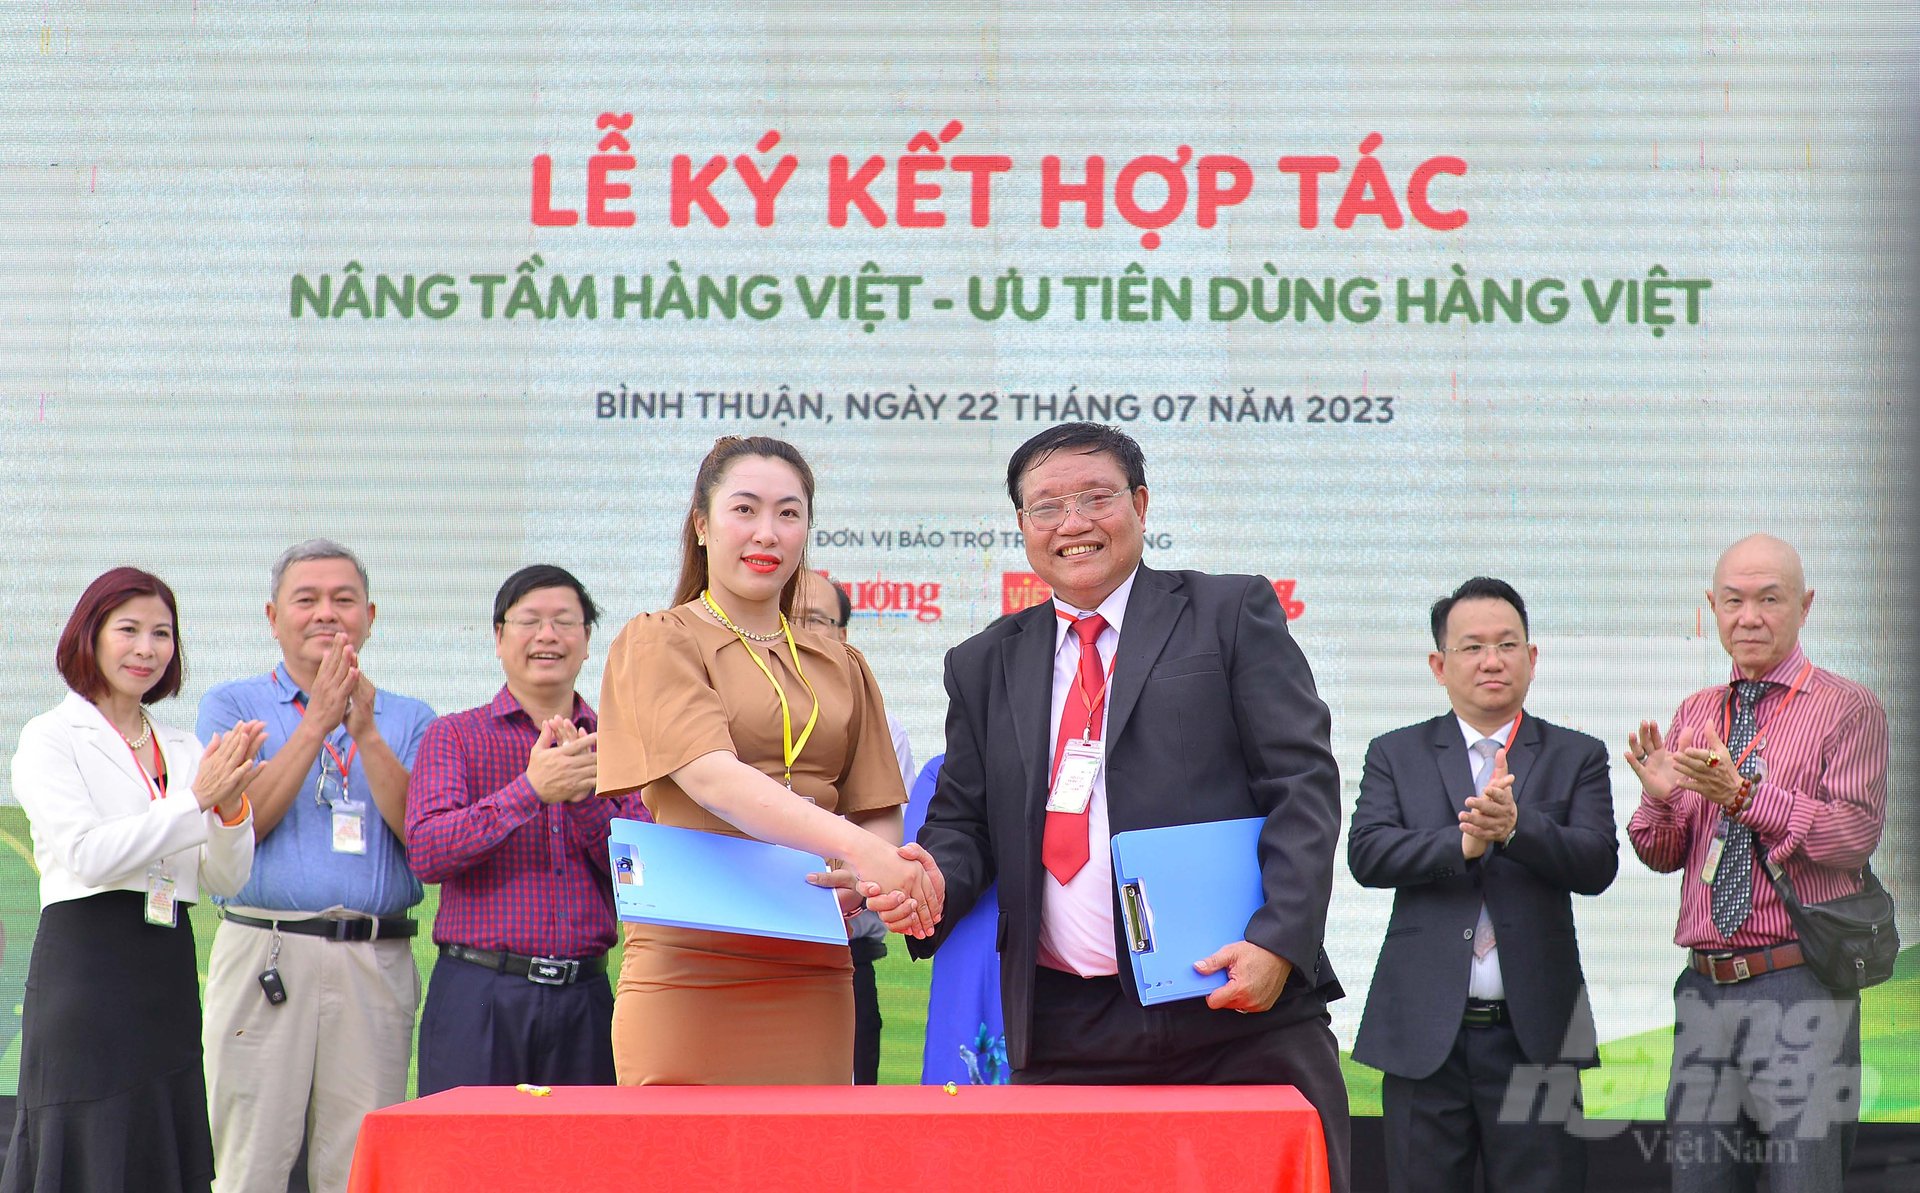 Trong chuỗi sự kiện khai mạc Hội chợ triển lãm thương mại Bình Thuận 2023 và Khai trương Ecofarm Pay Rest Stop Bình Thuận, đại diện Ecofarm Pay ký kết hợp tác phát triển với các tỉnh, doanh nghiệp. Ảnh: Minh Hậu.